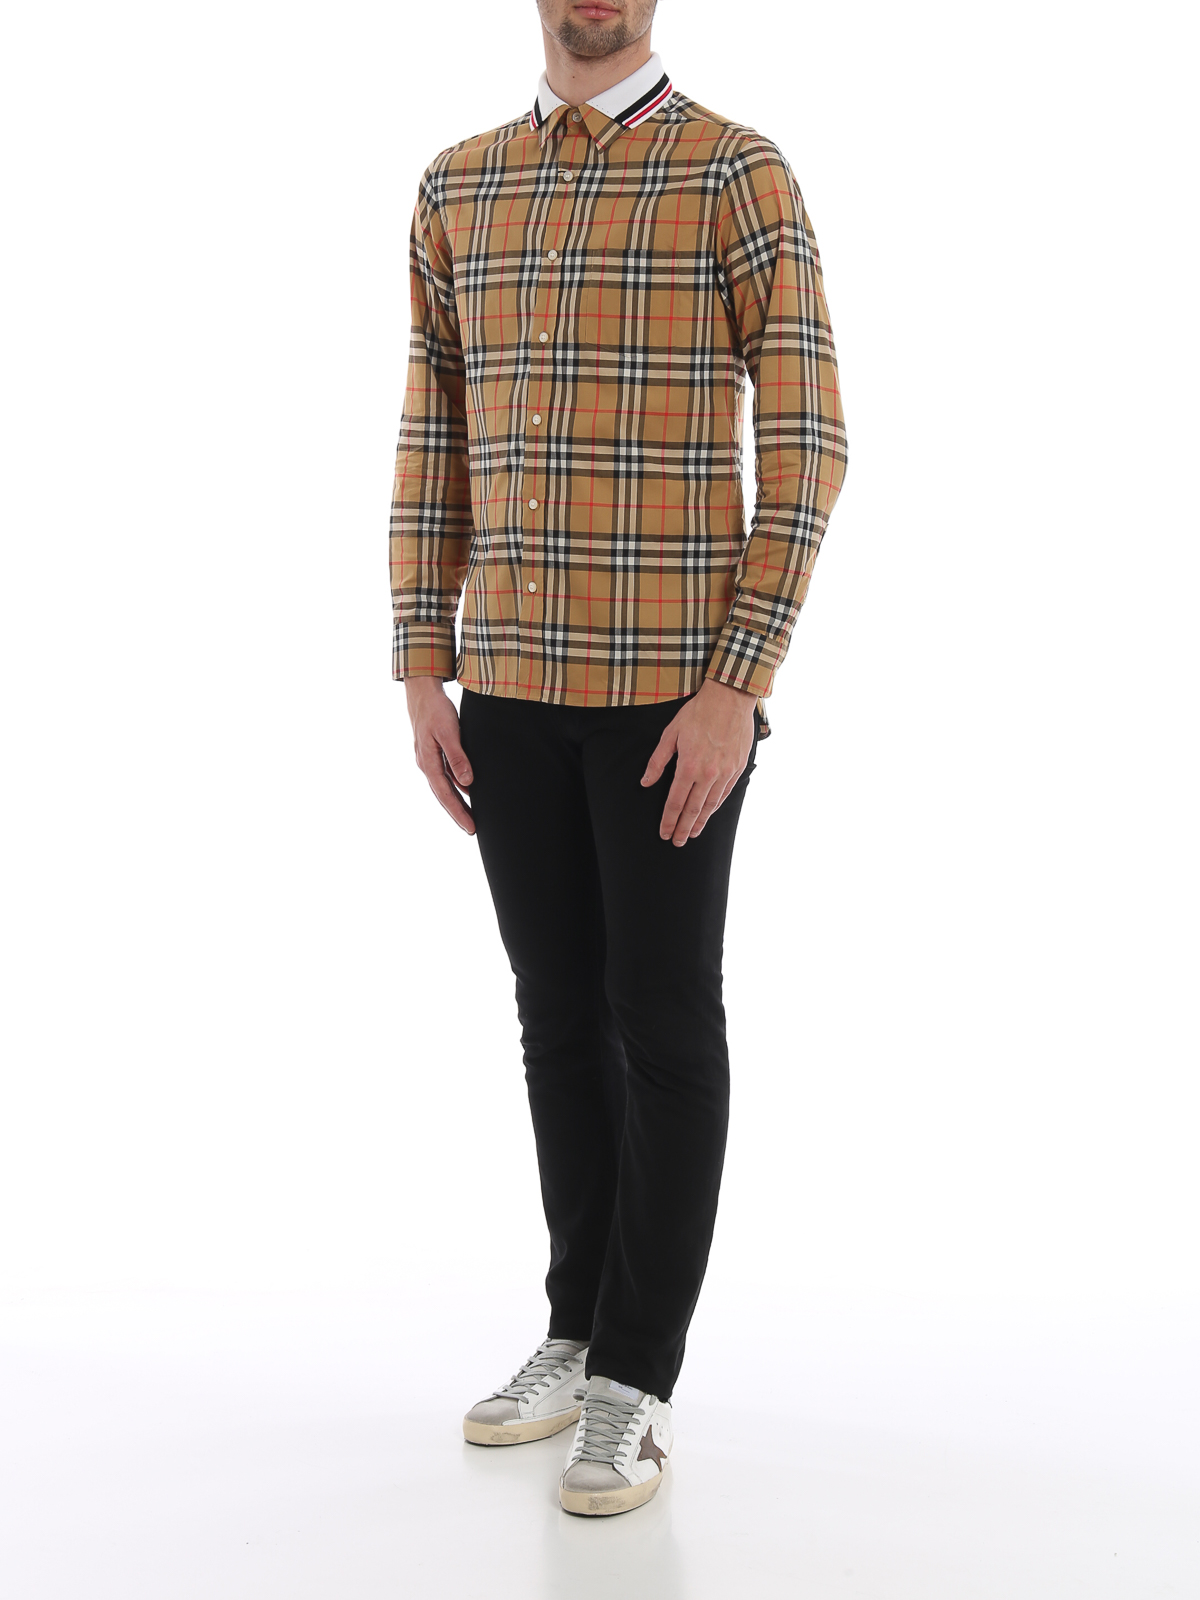 Oplossen Pidgin raket Shirts Burberry - Edward knitted collar shirt - 8004962 | iKRIX.com